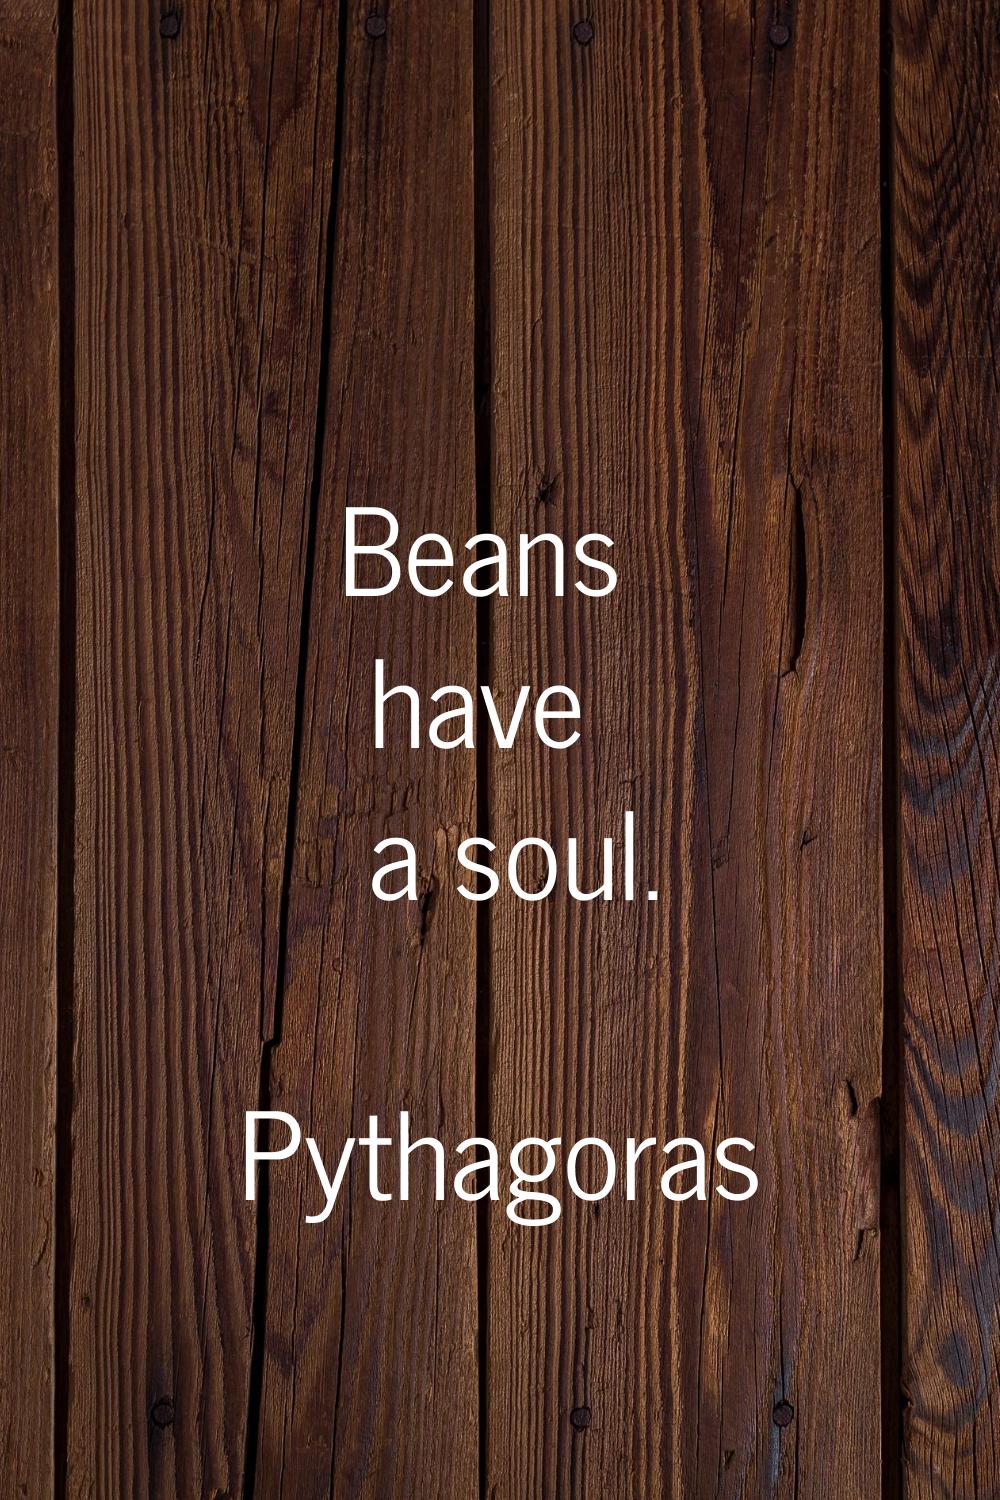 Beans have a soul.